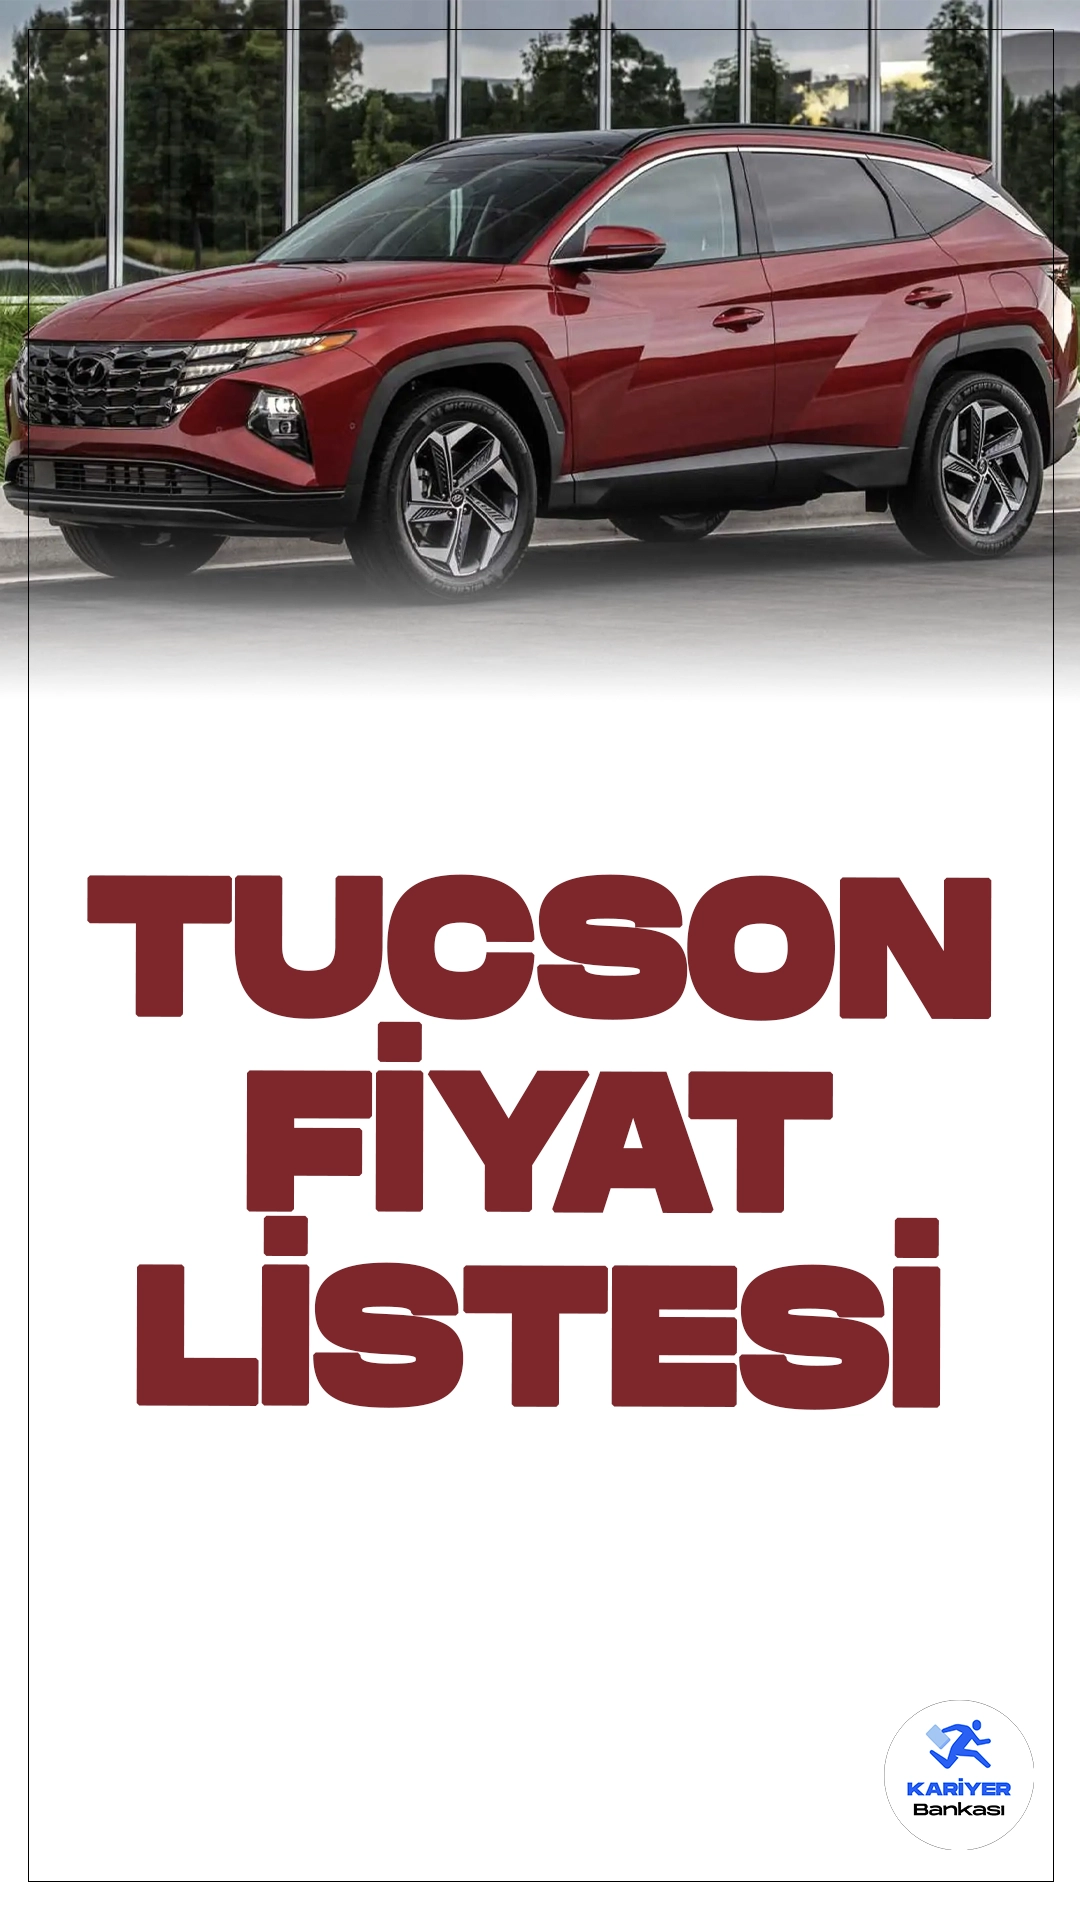 Hyundai Tucson Mayıs 2024 Fiyat Listesi.Hyundai Tucson, SUV segmentinde yenilikçi teknolojiler ve şık tasarımı ile dikkat çekiyor. Güney Koreli otomobil üreticisi Hyundai'nin popüler modeli Tucson, güvenlikten konfora, performanstan yakıt verimliliğine kadar birçok alanda sunduğu özelliklerle segmentinde öne çıkıyor.